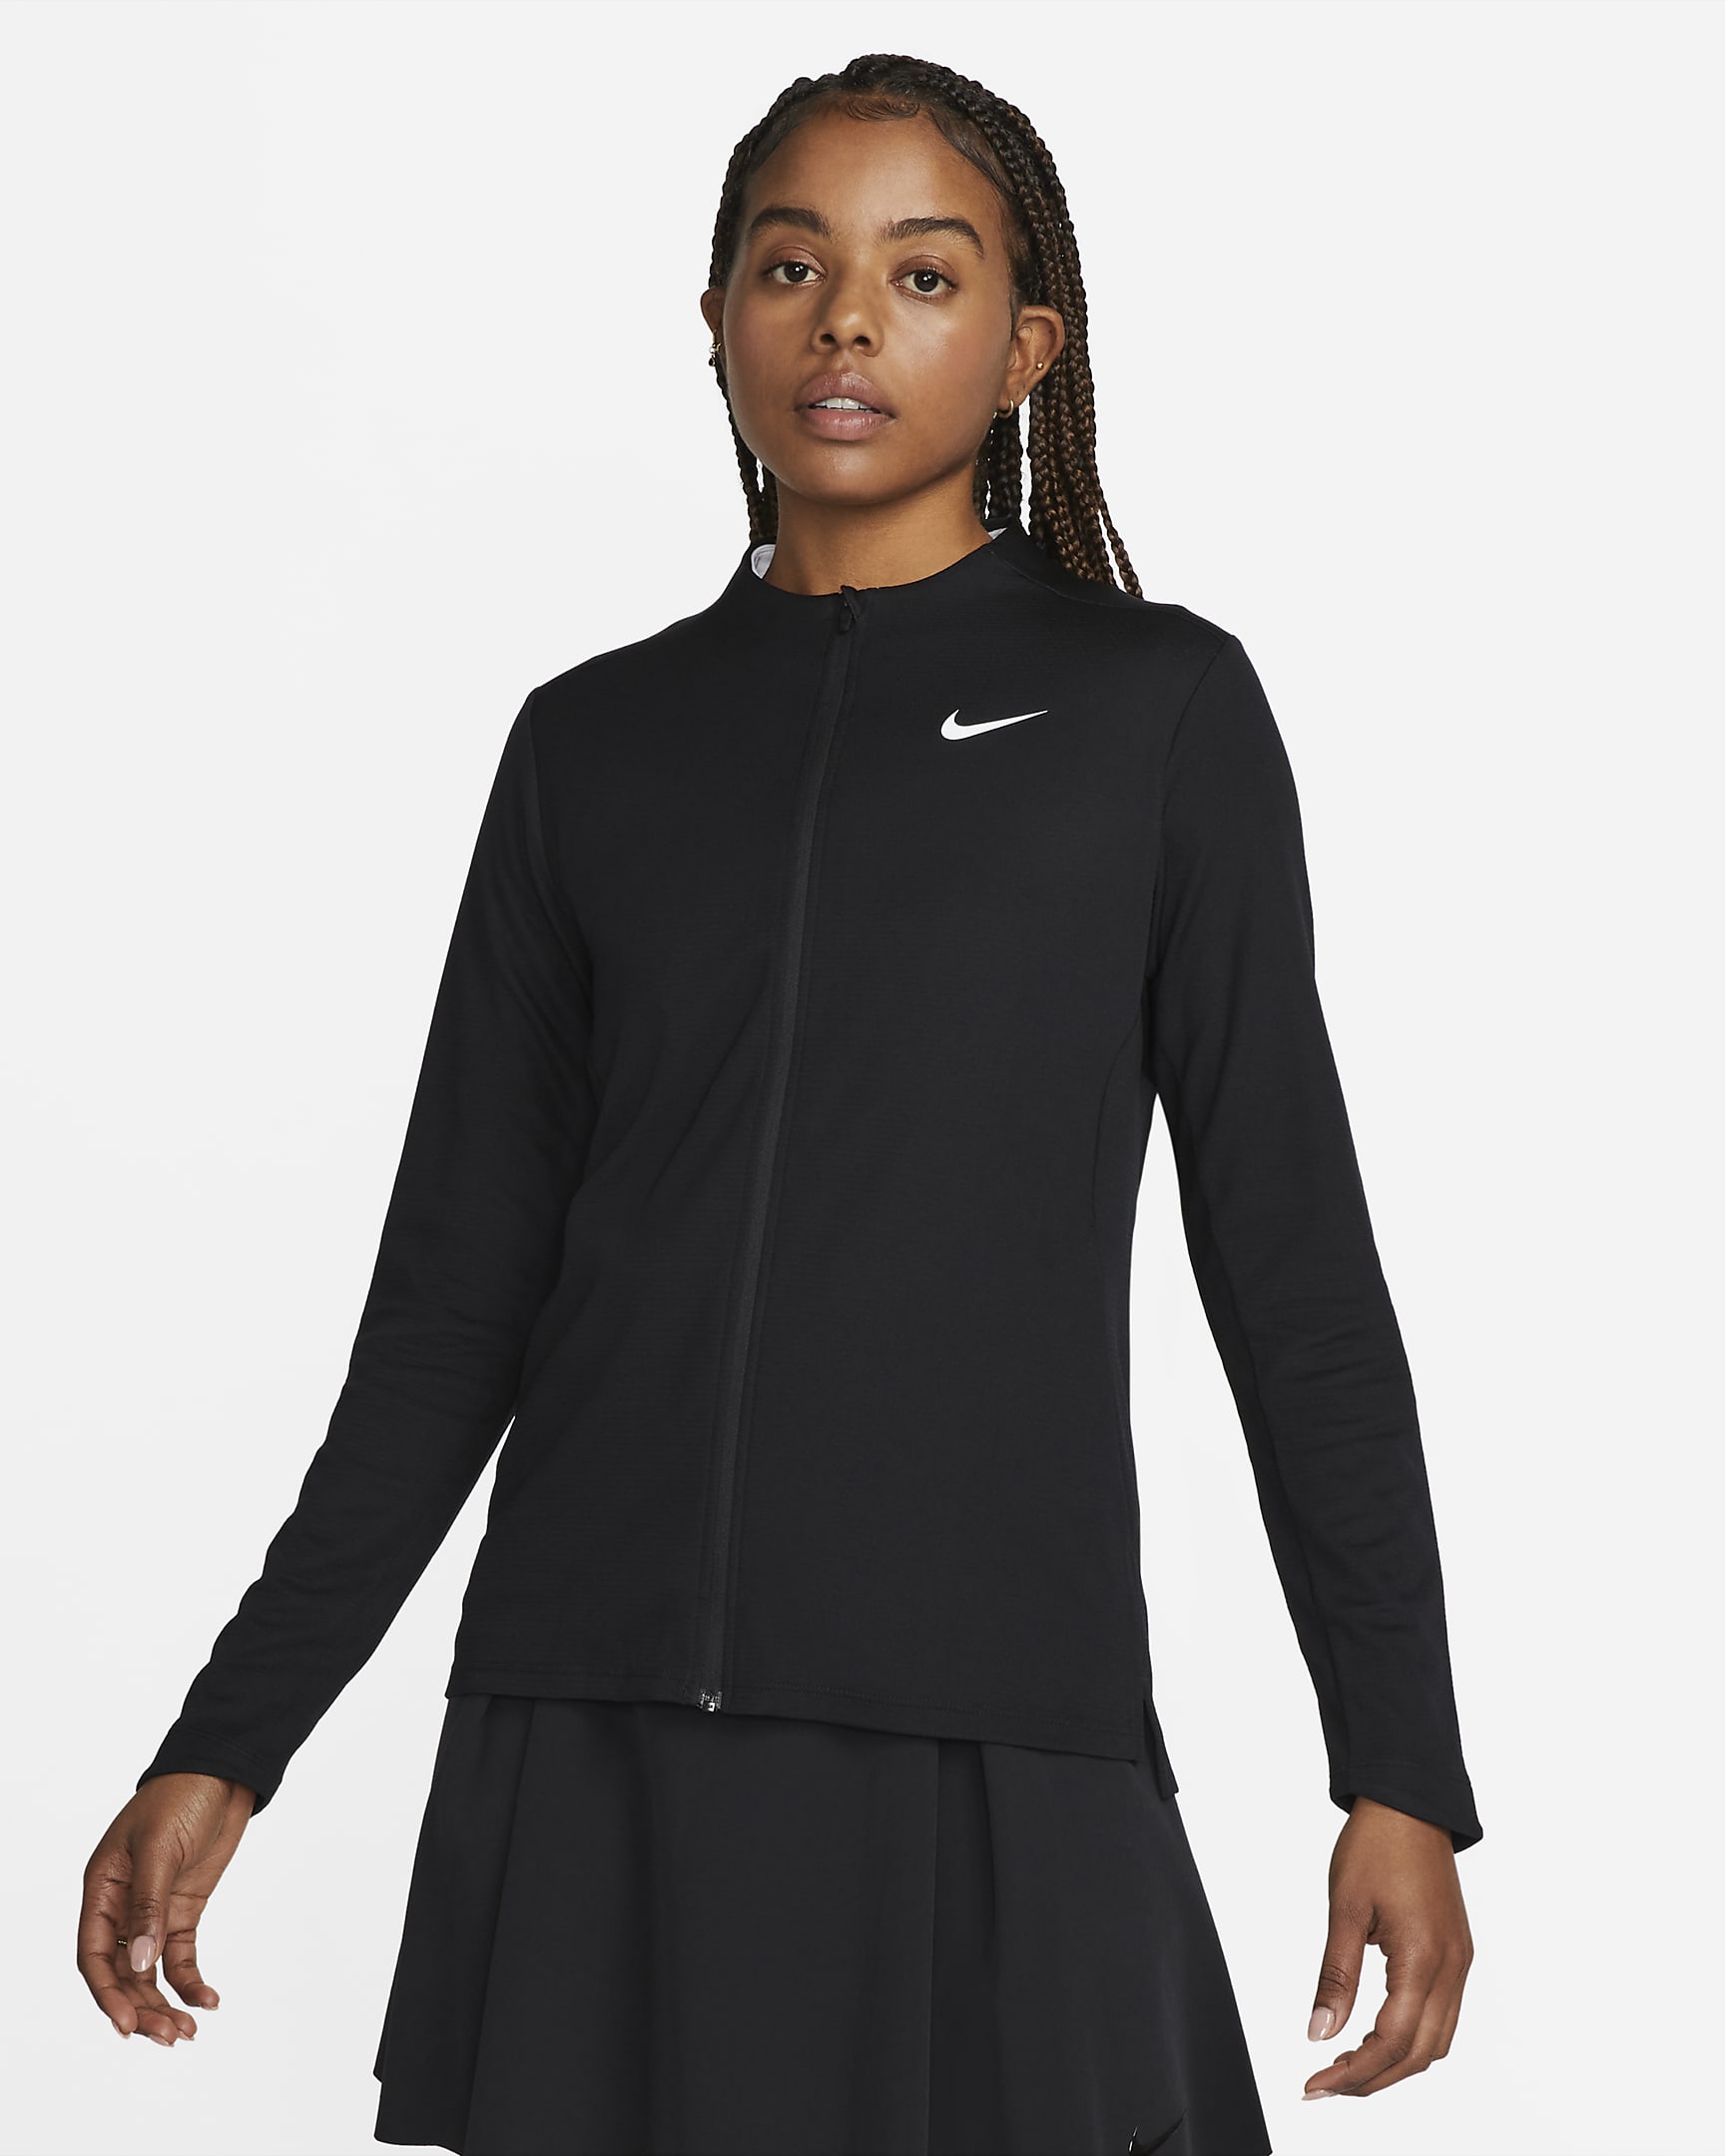 Nike Dri-FIT UV Advantage Women's Full-Zip Top. Nike IL